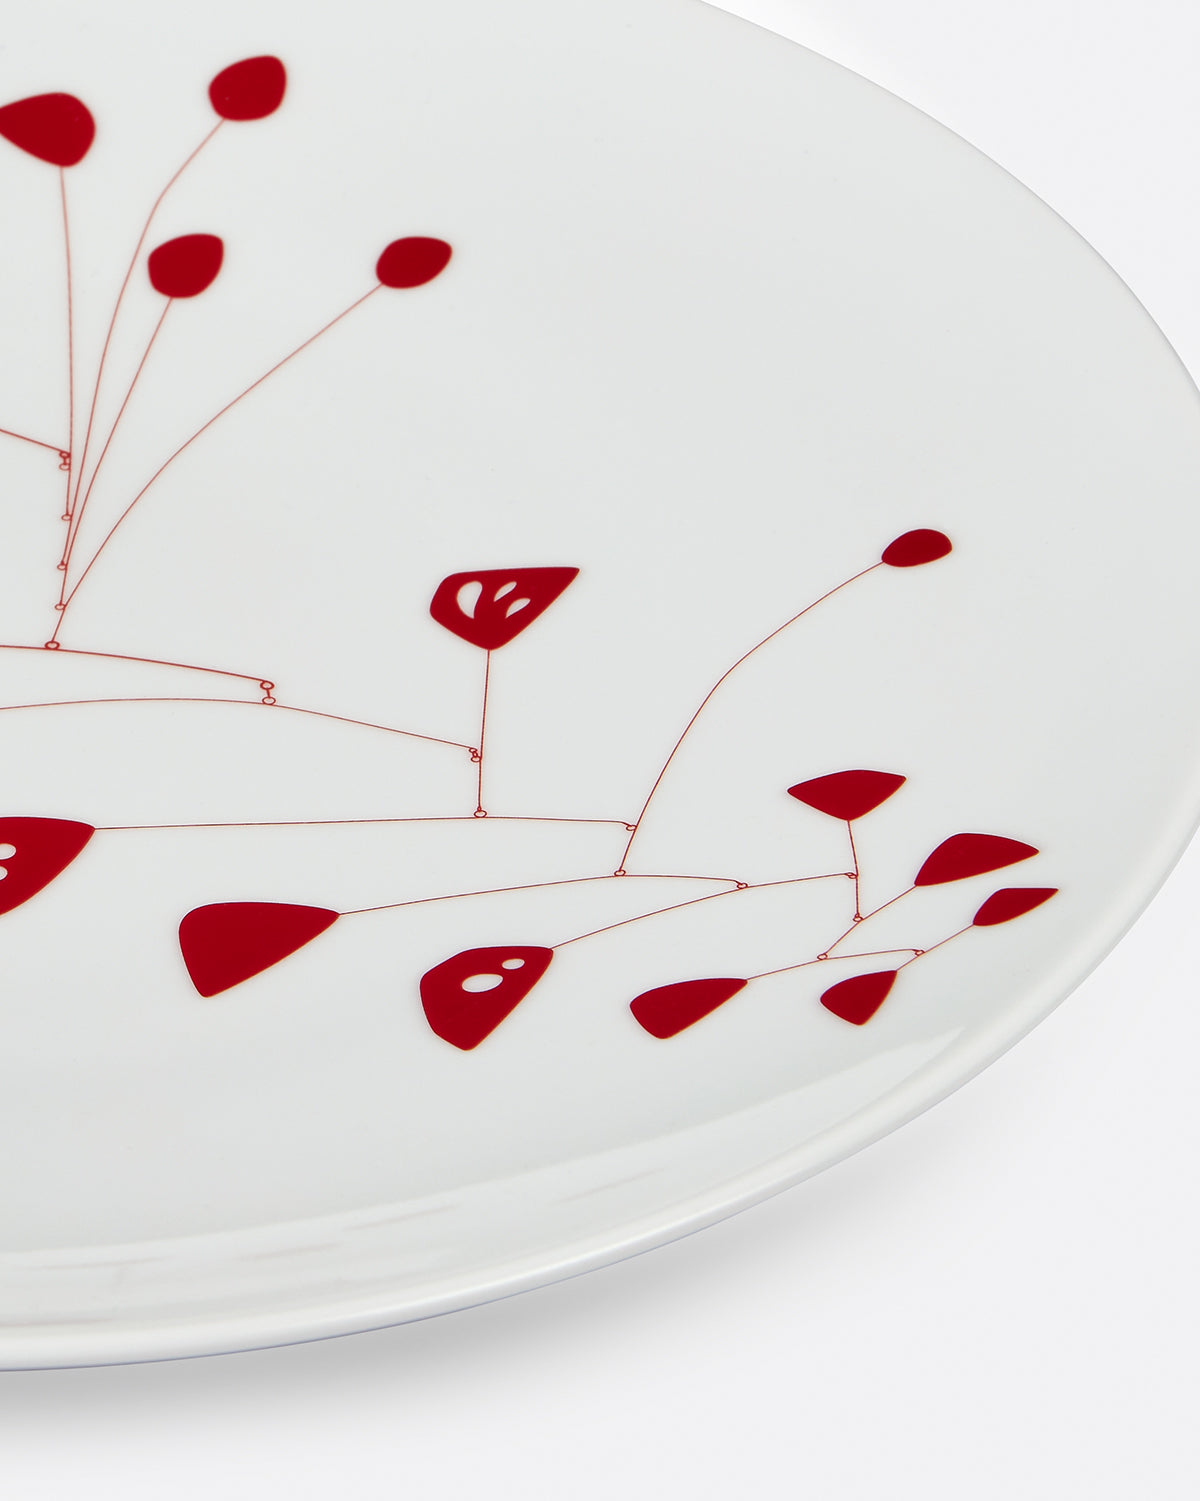 Alexander Calder Set of 6 Plates